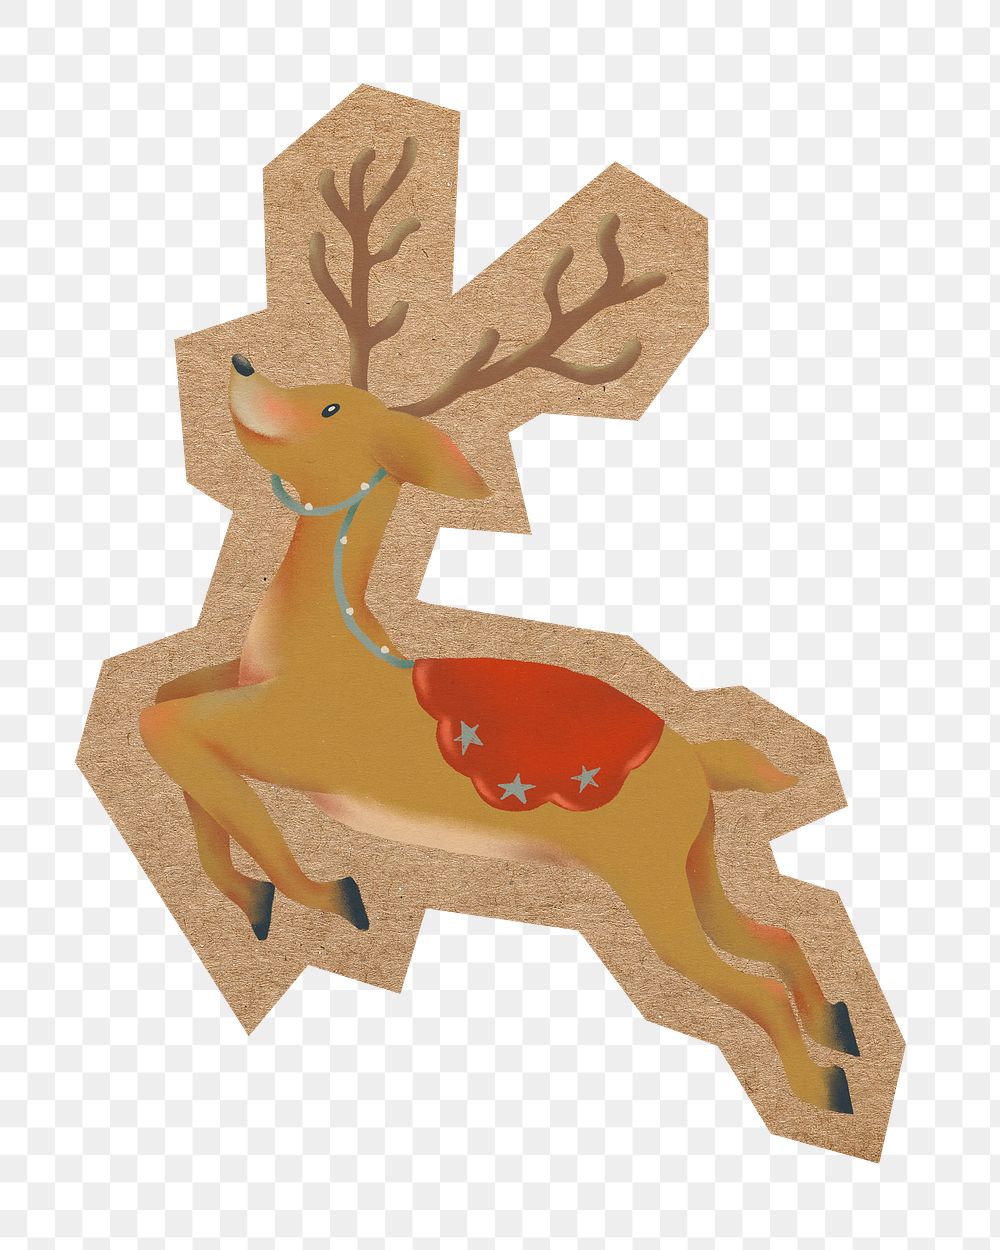 Reindeer illustration png, cut out paper element, transparent background